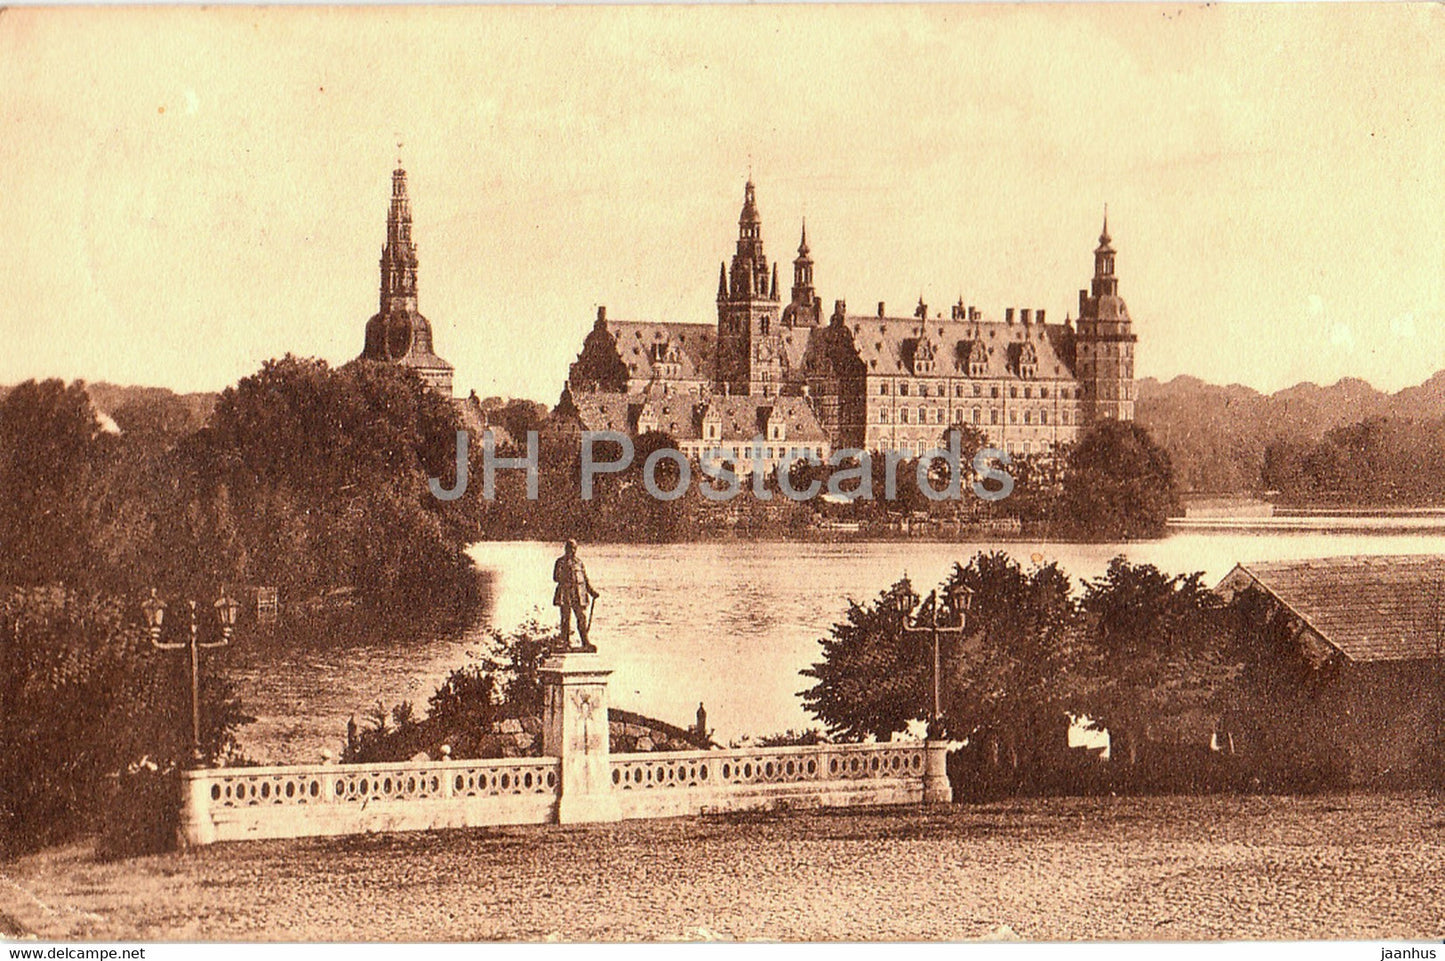 Frederiksborg Slot - castle - old postcard - 1919 - Denmark - used - JH Postcards